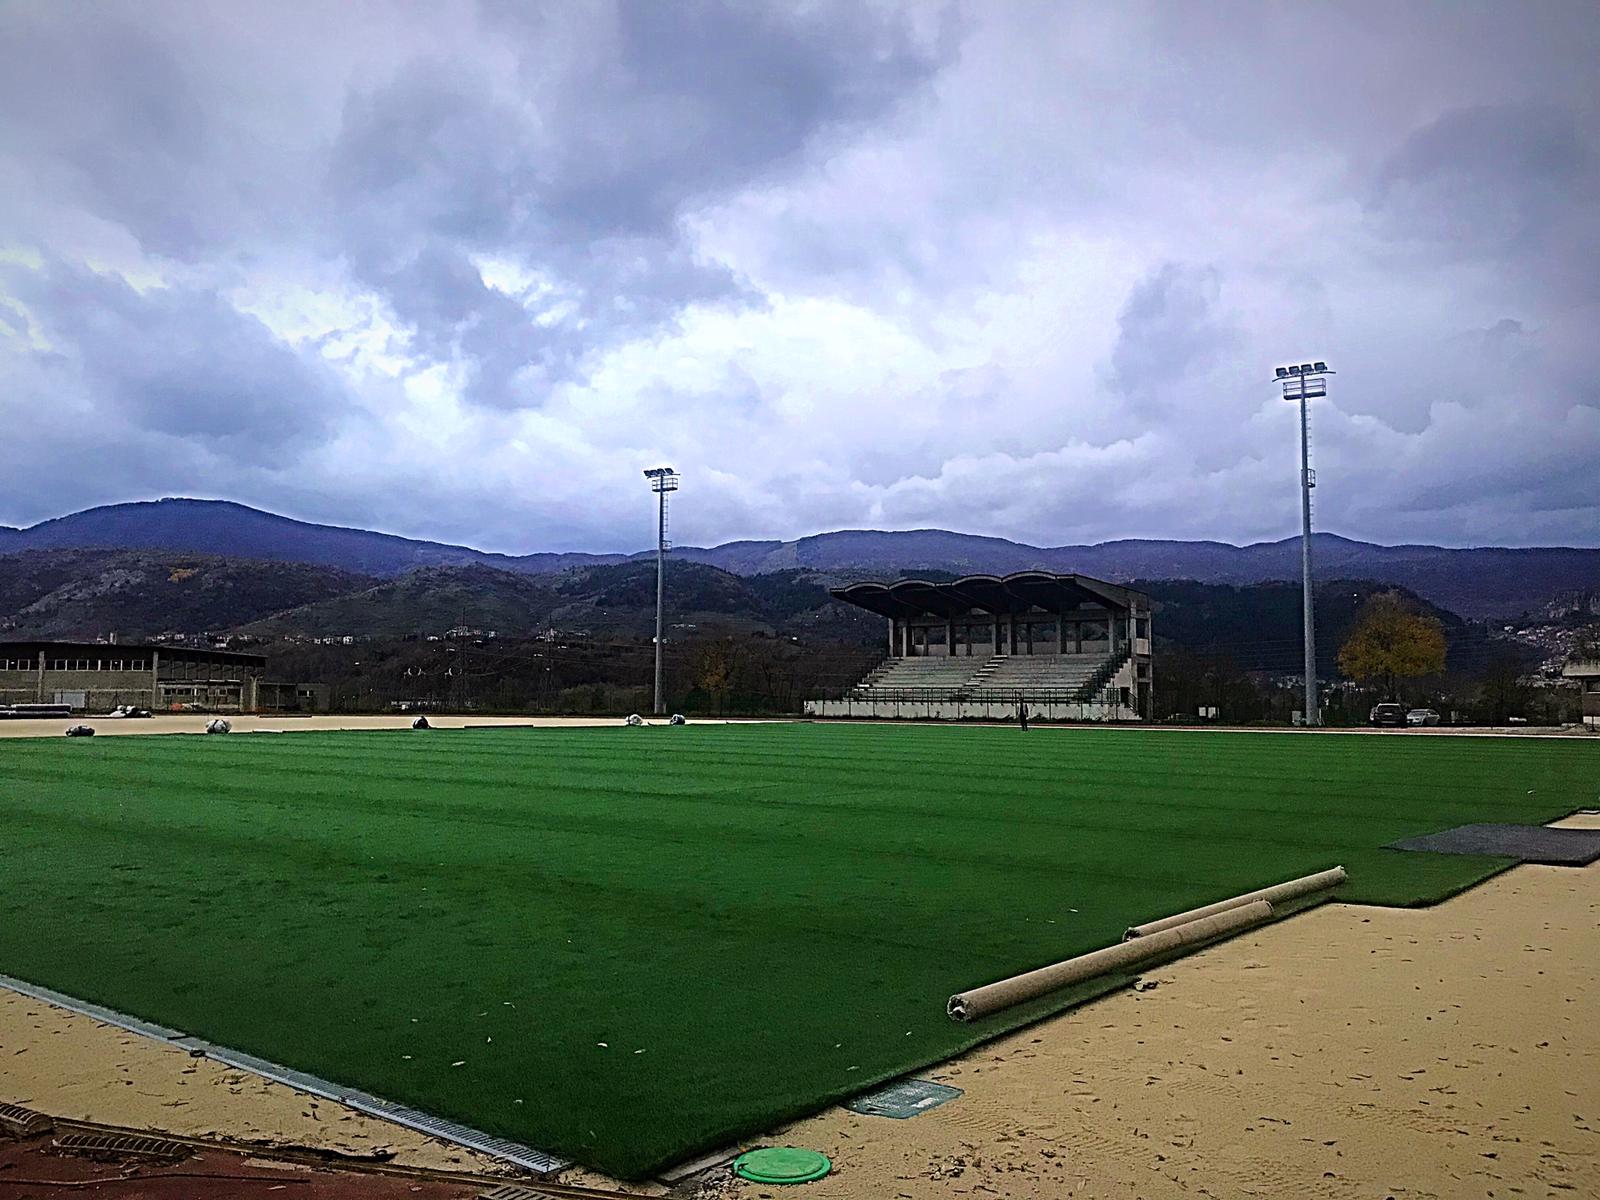 Quasi ultimati i lavori allo stadio "Luca Poggi" di Tagliacozzo, steso il manto d'erba sintetica. All'inizio dell'anno l'inaugurazione